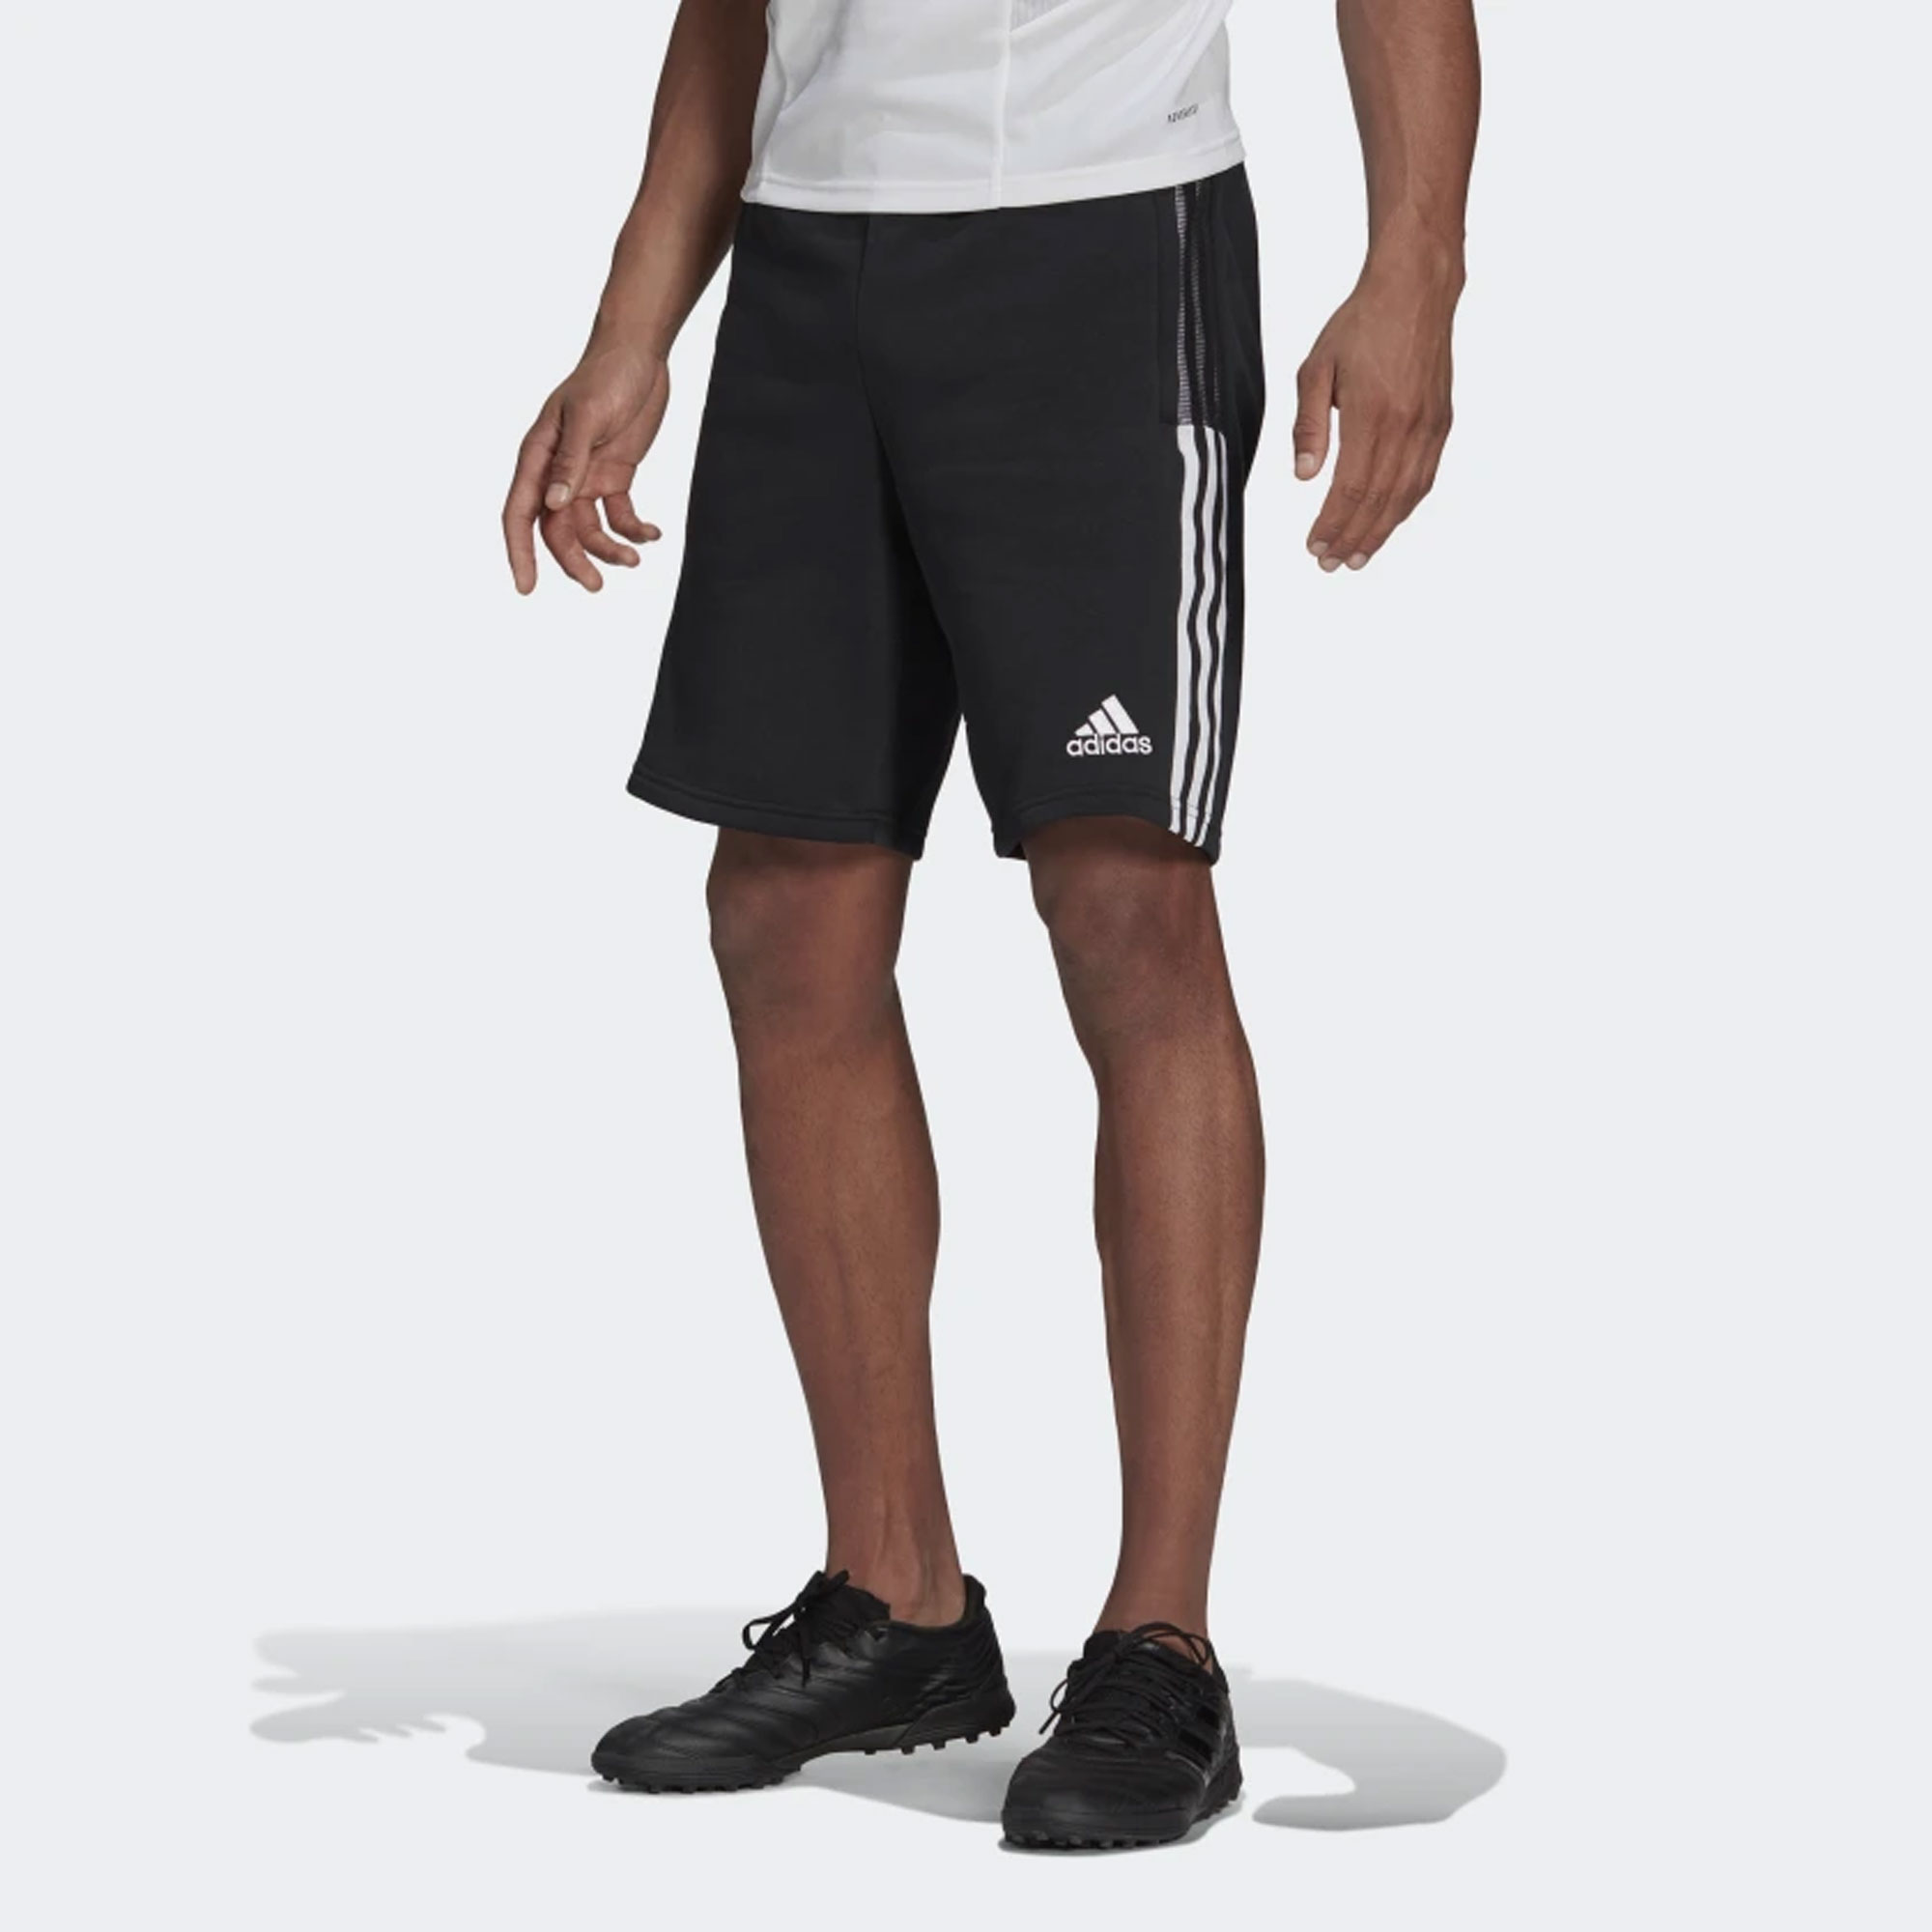 Extranjero Consciente compensar stefanssoccer.com:adidas Tiro 21 Sweat Shorts - Black